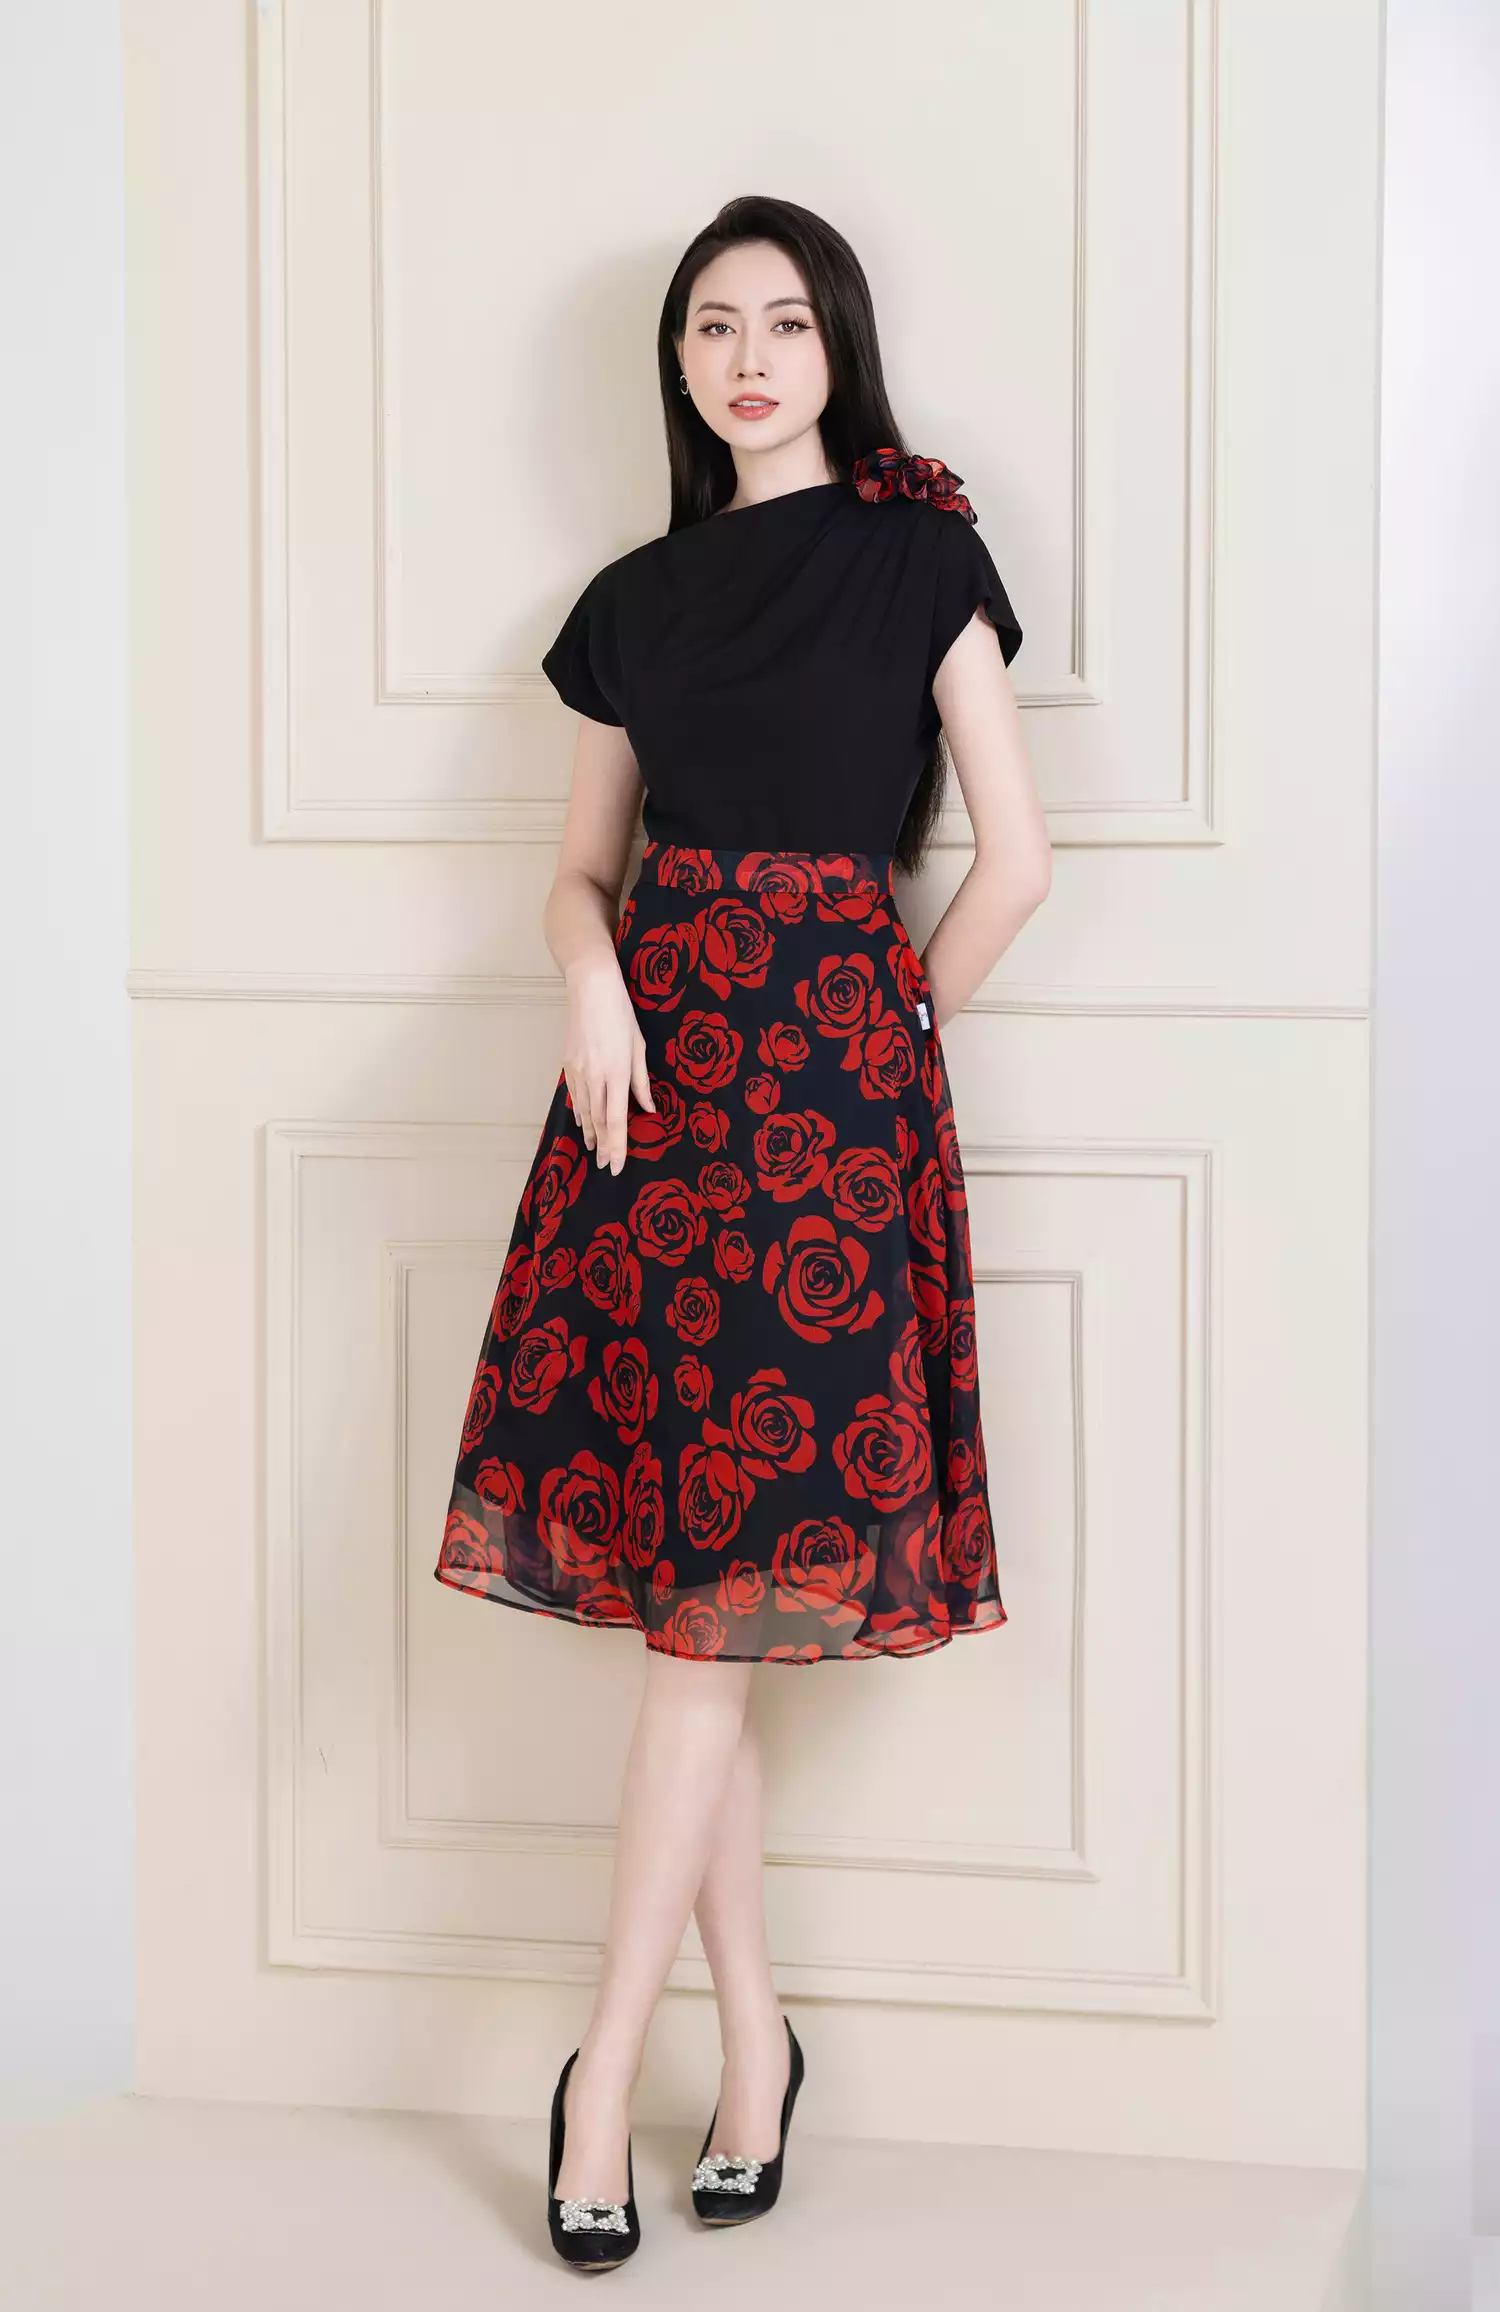 Áo dài cách tân nữ nhung đỏ thiết kế nơ đen chéo cổ kết hợp với chân váy